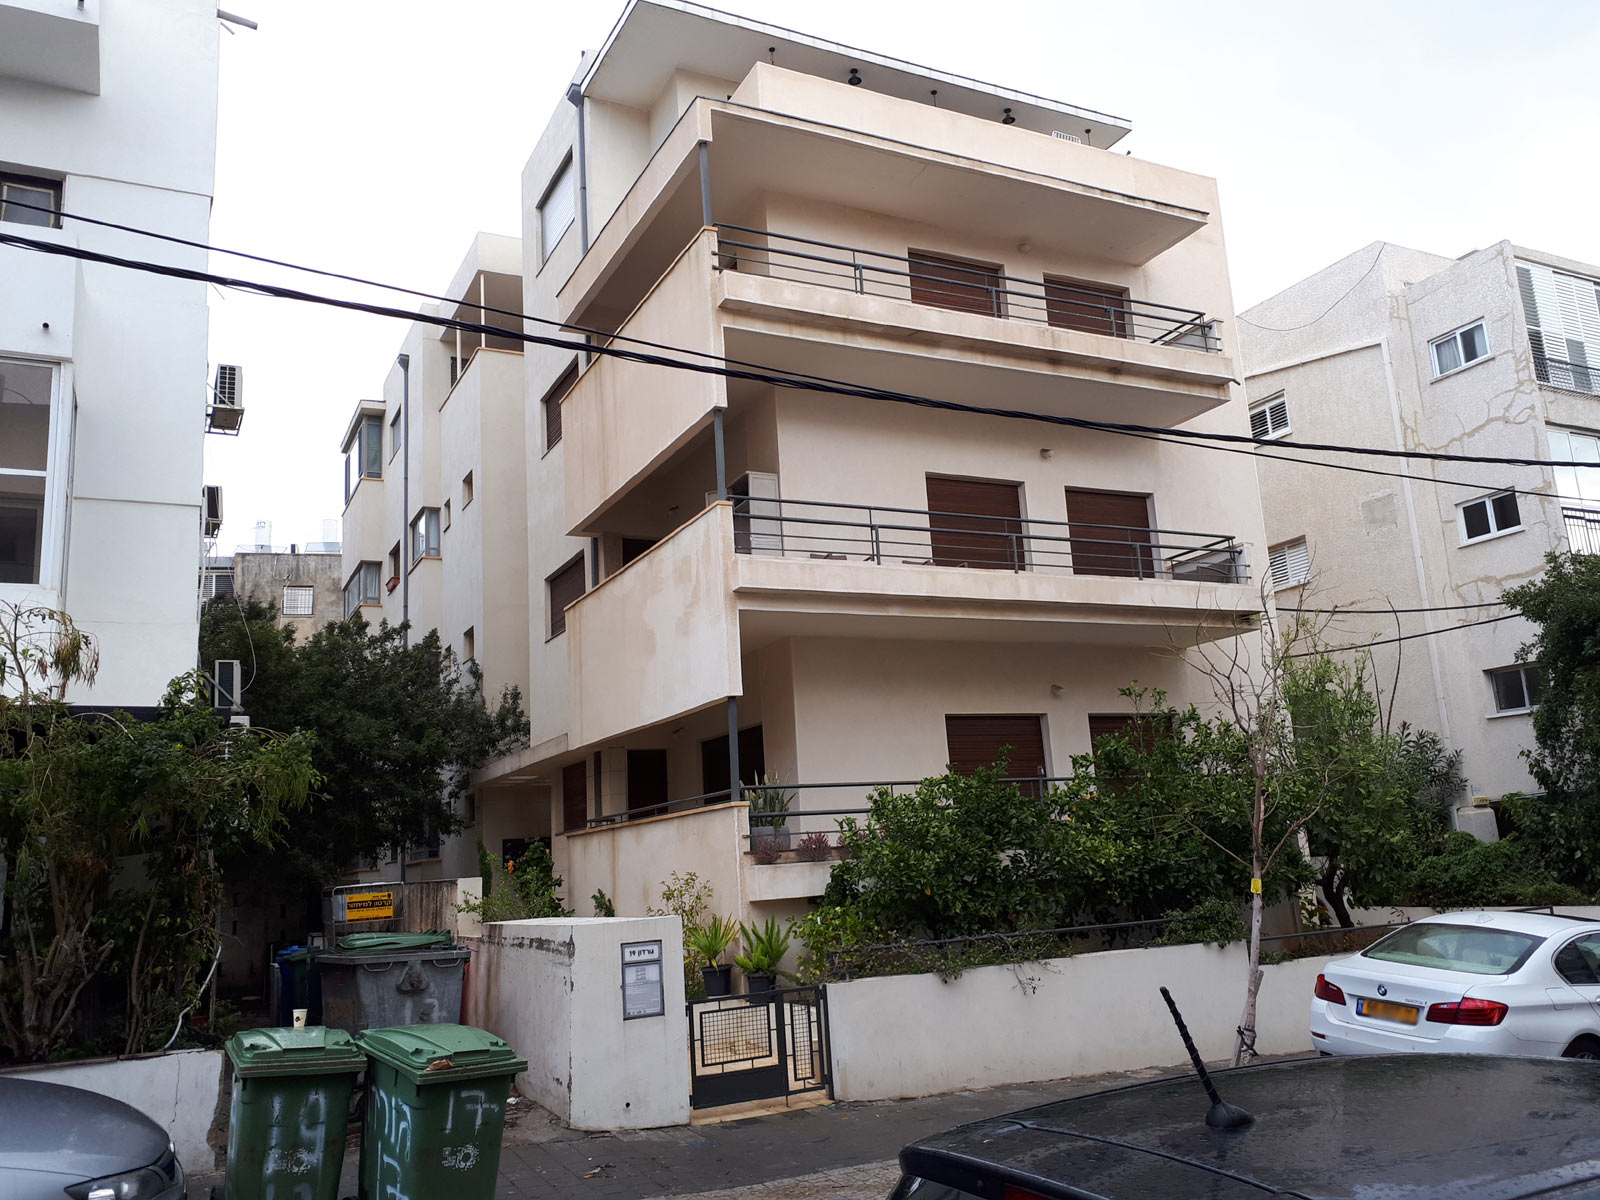 Tel Aviv - buildings for conservation - 19 Gordon